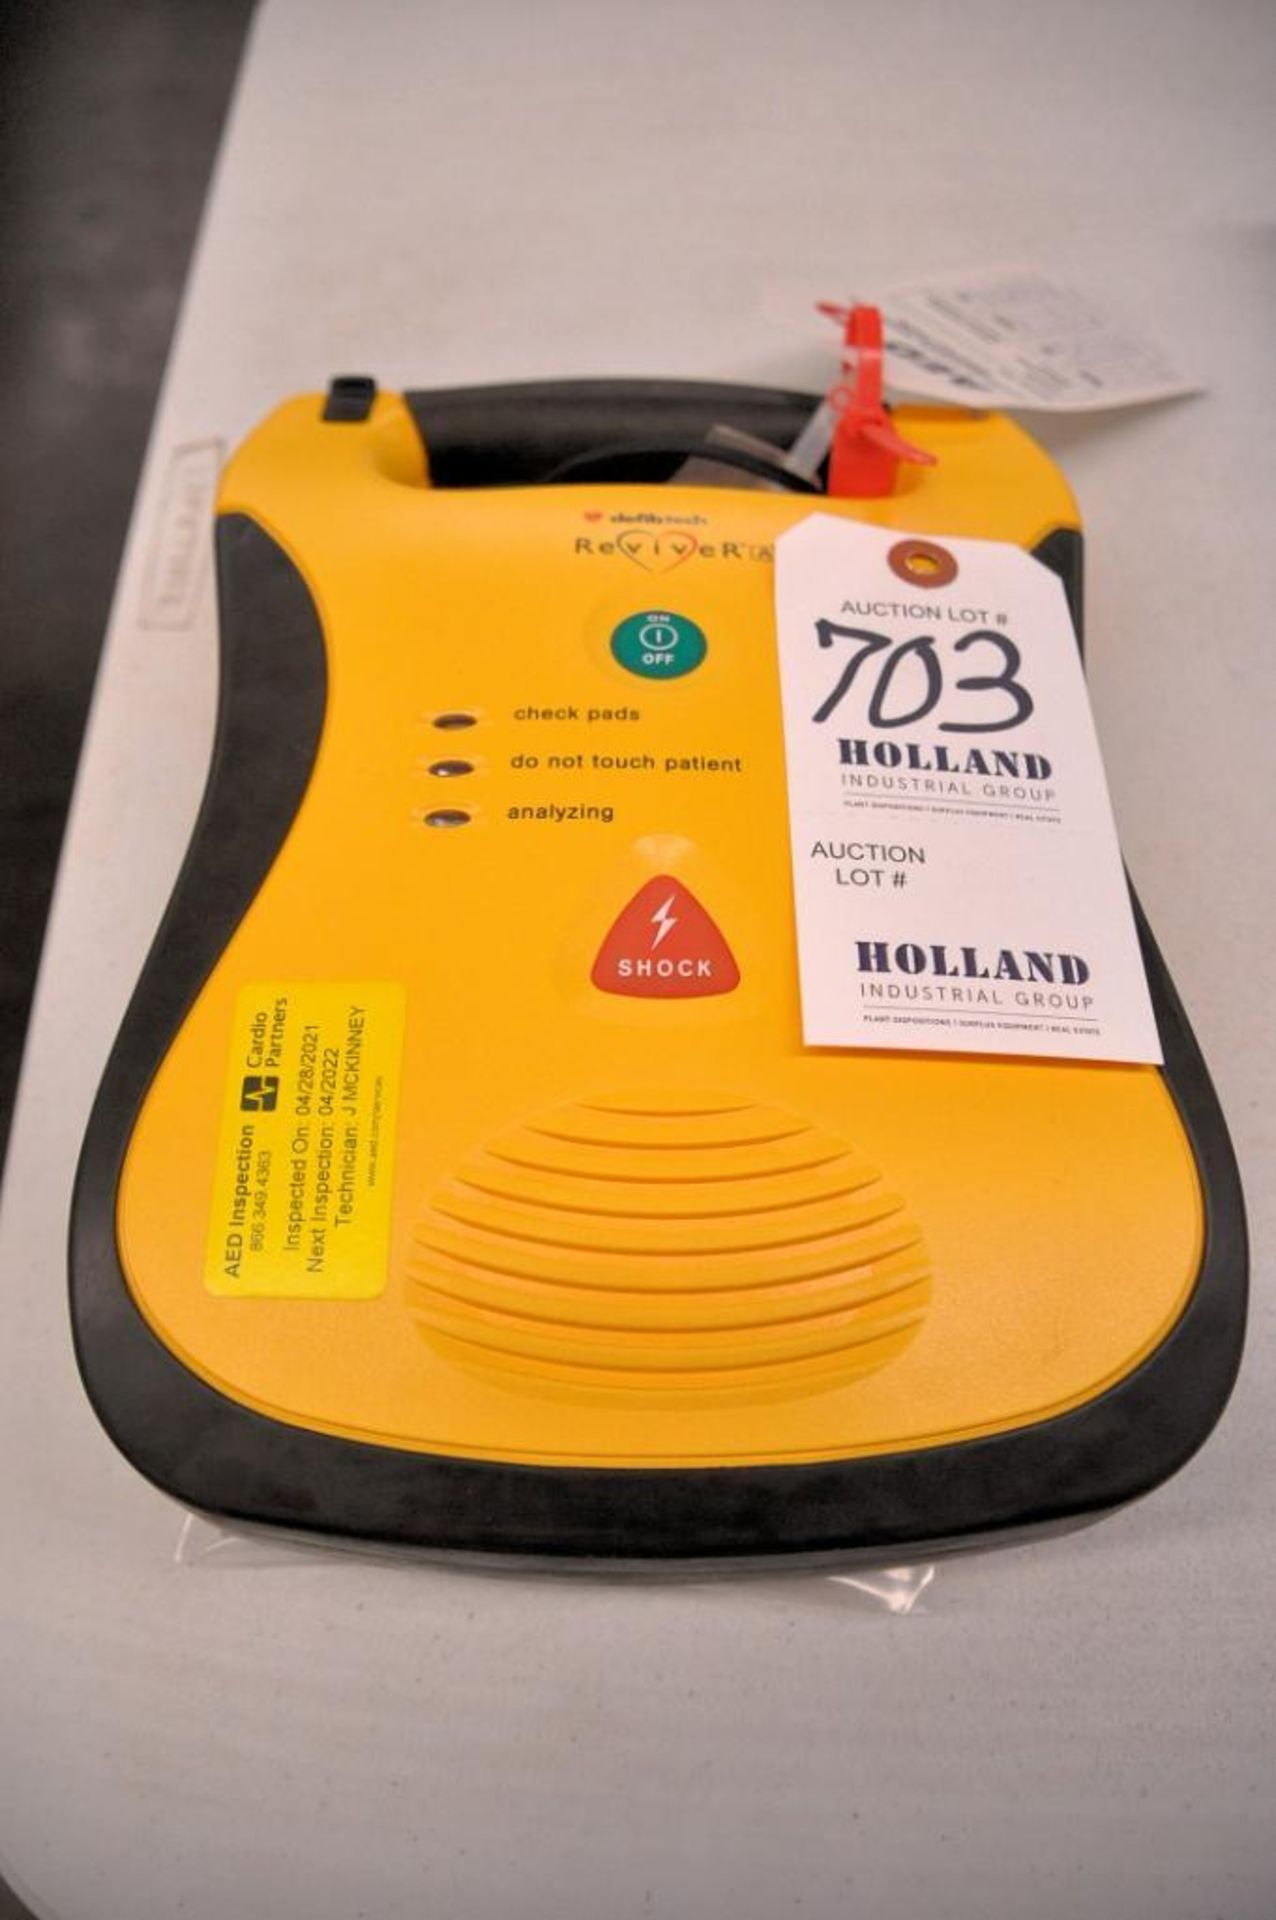 DefibTech Reviver AED Defibrillator